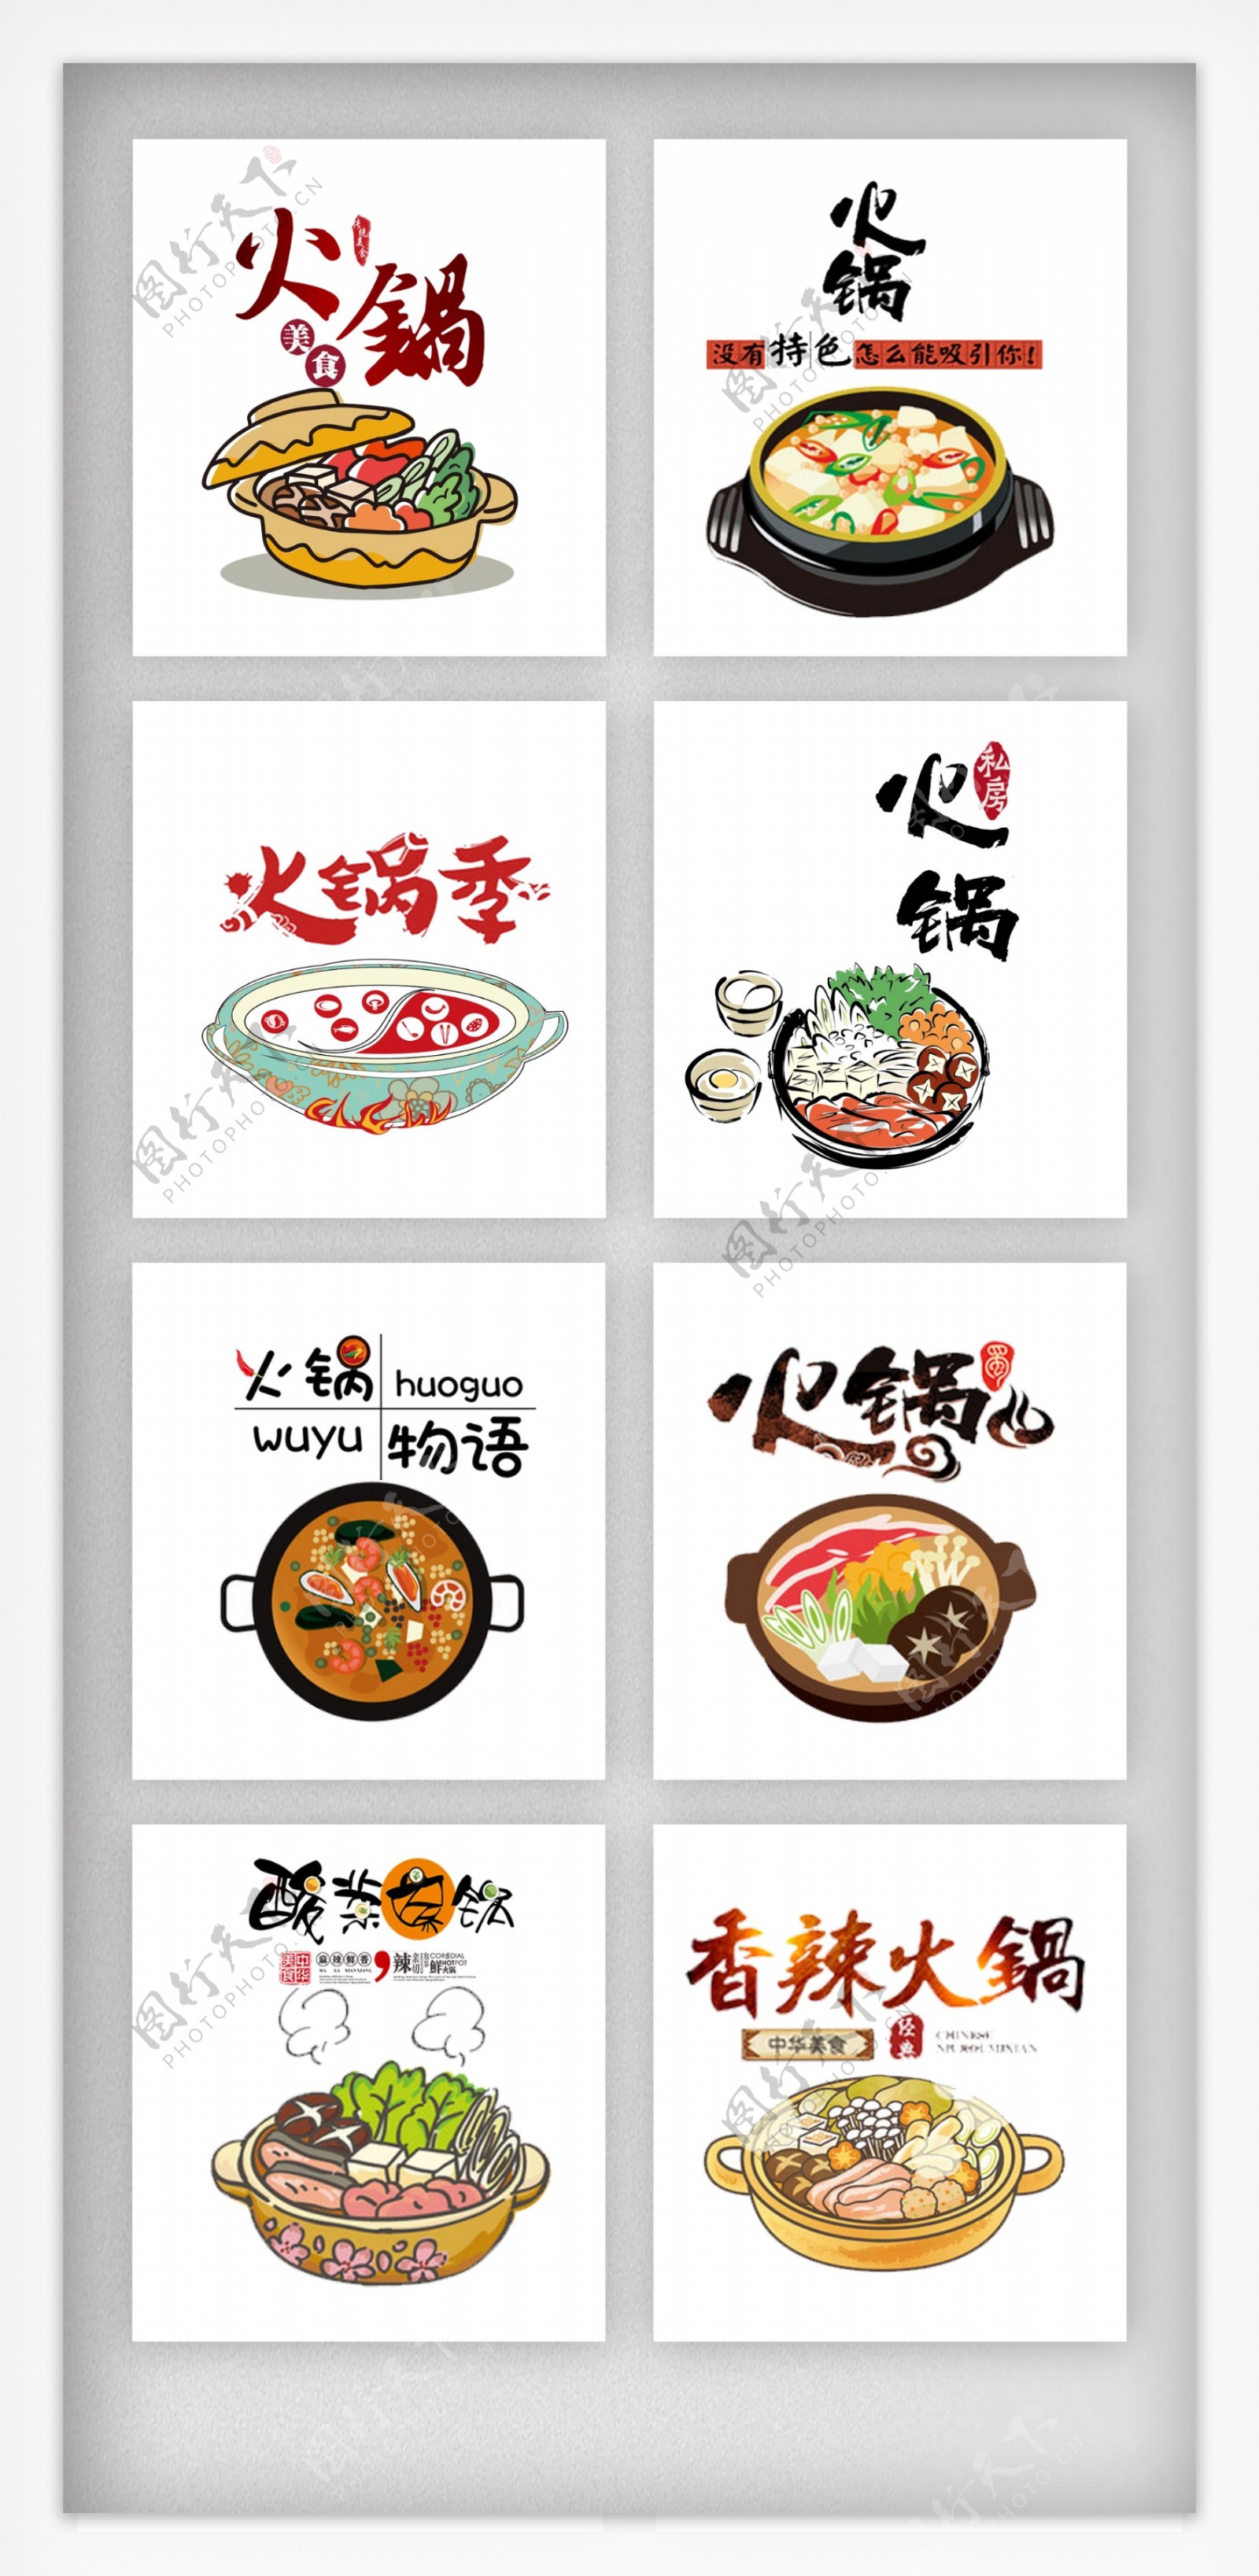 火锅节艺术字体主题设计素材